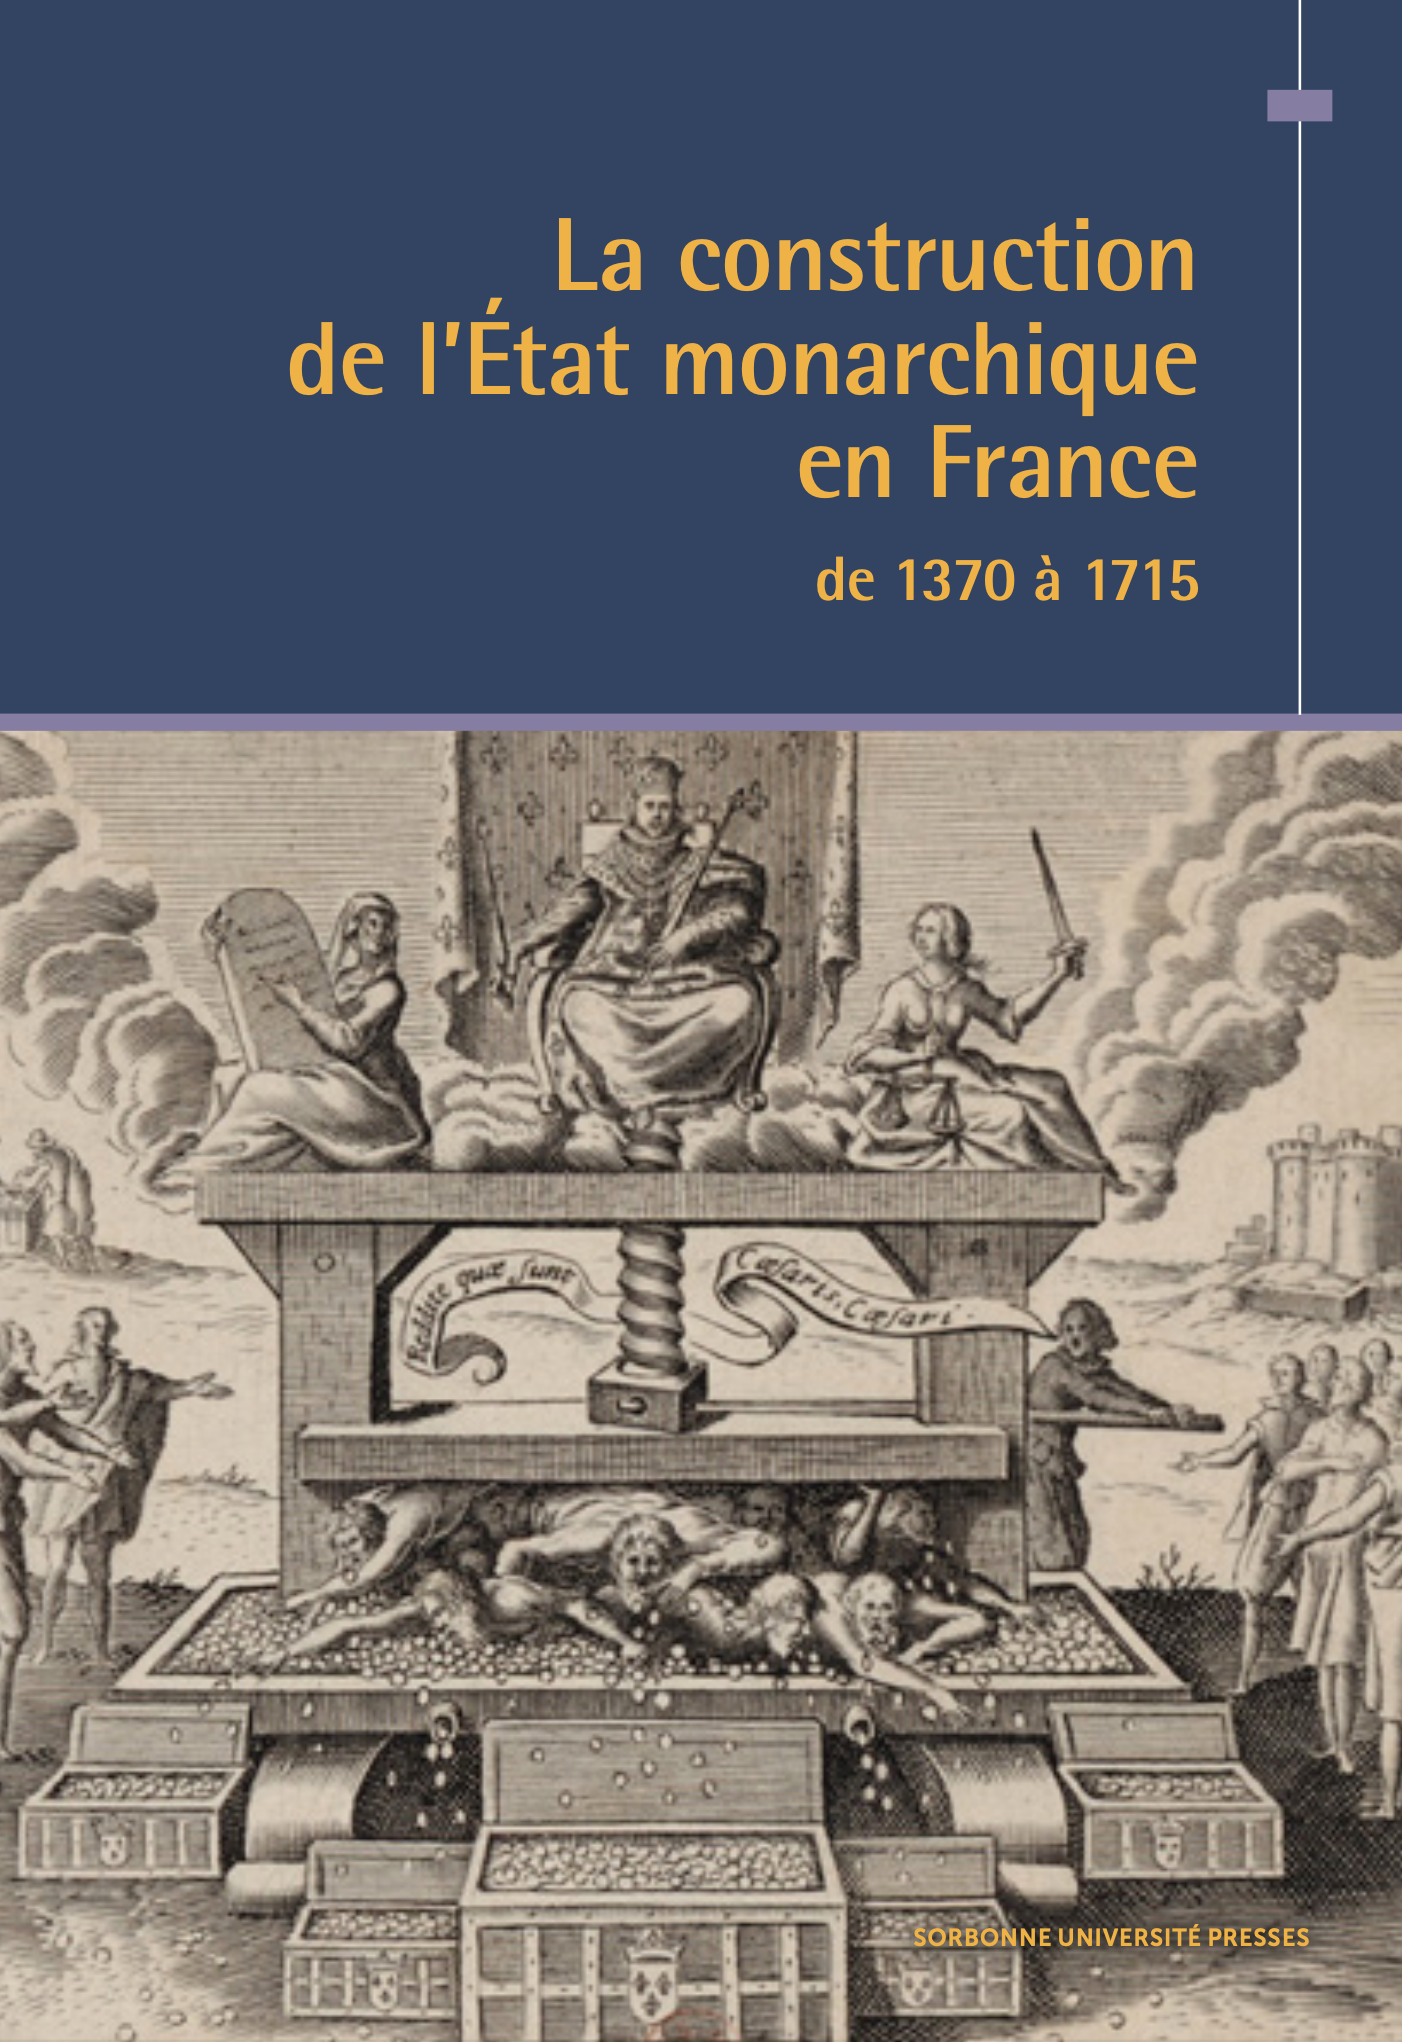 42. La construction de l'État monarchique en France de 1370 à 1715